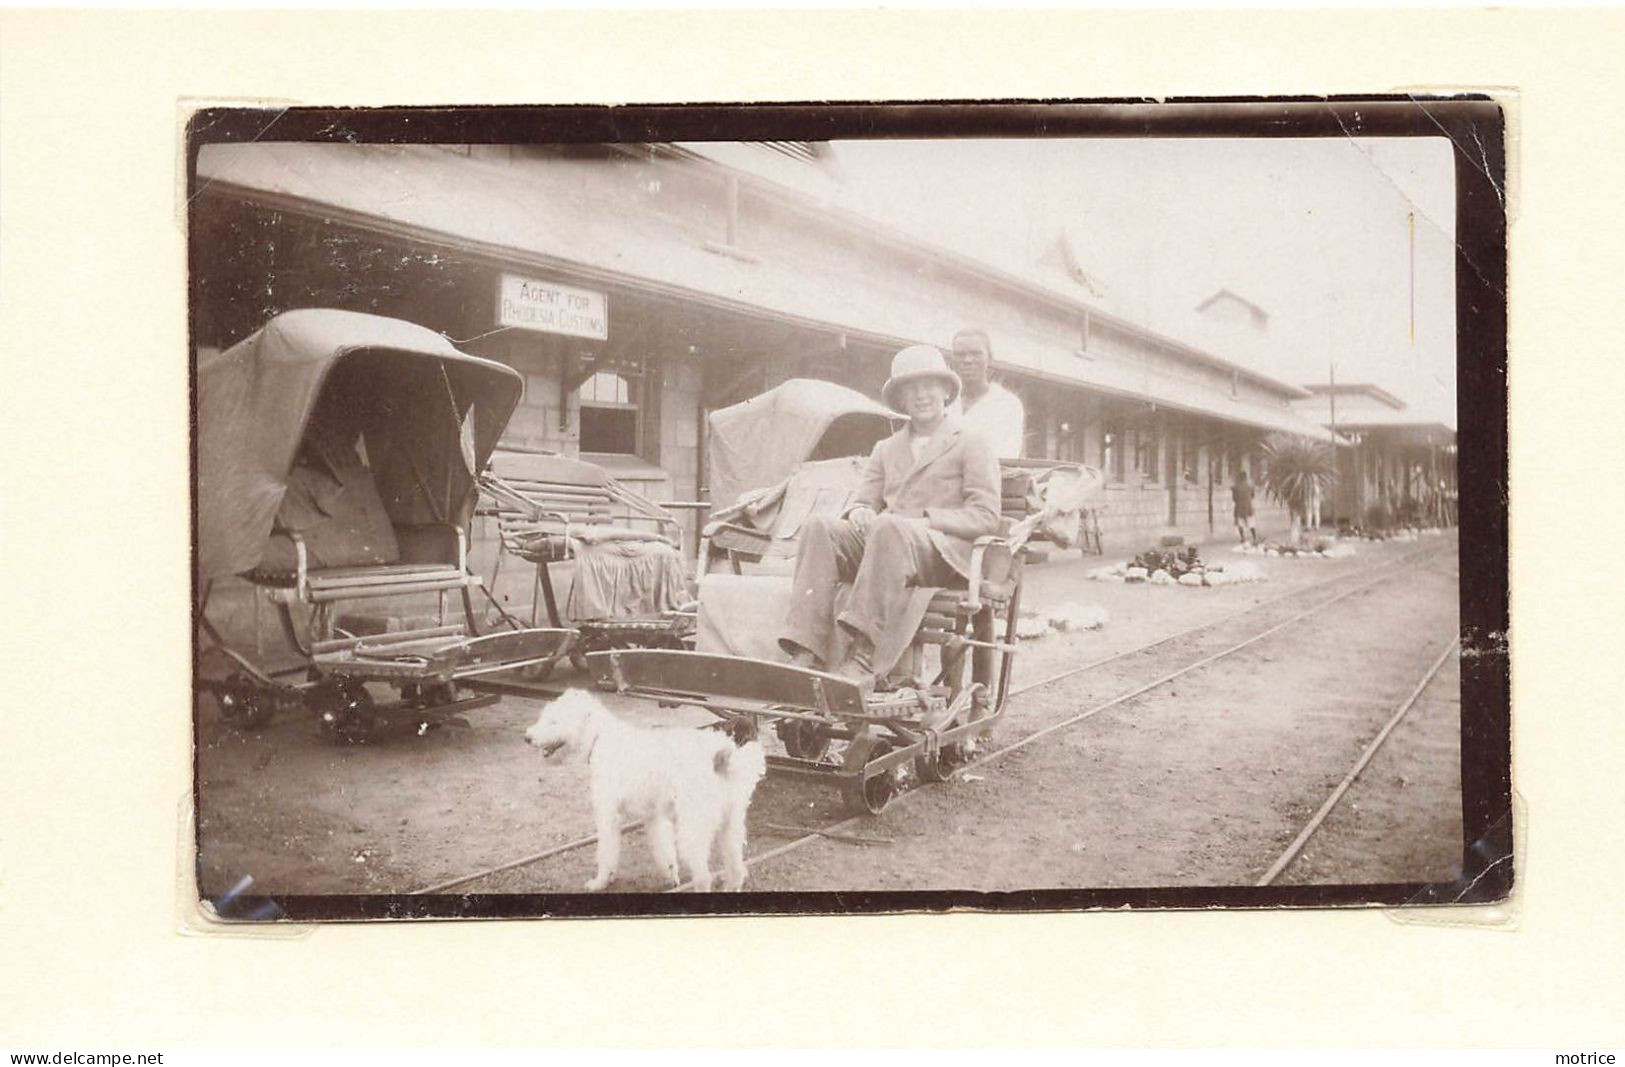 BAIRA - Afrique Du Sud, La Gare (photo En 1929, Format 11,3cm X 6,8cm) - Africa